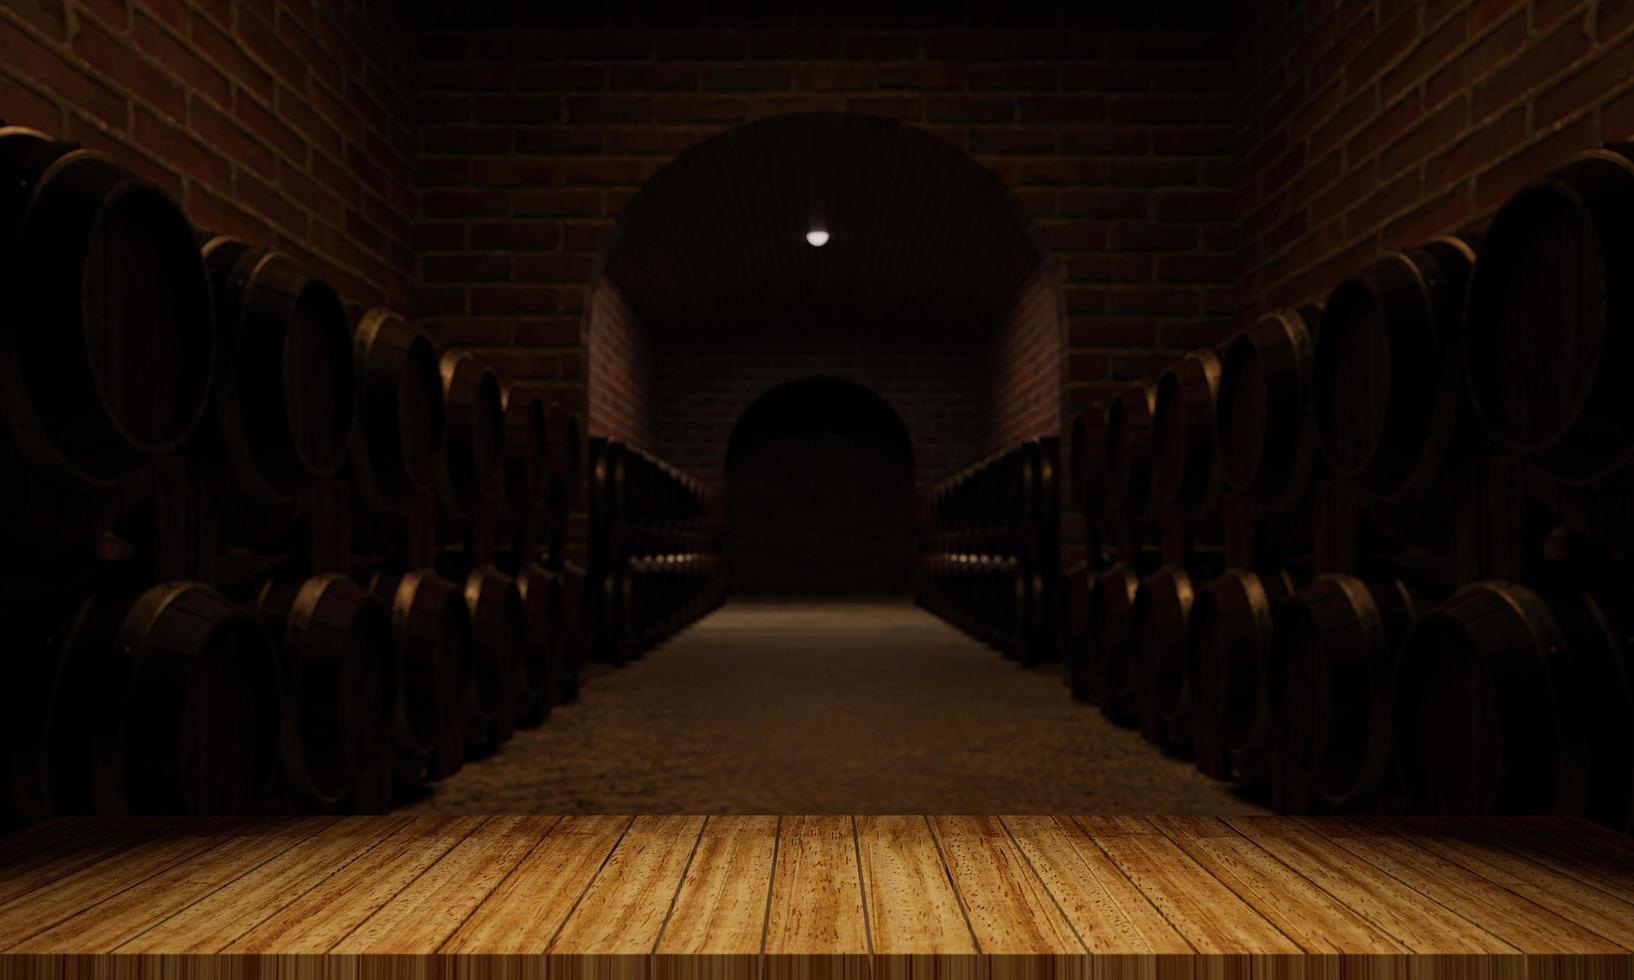 barriles de madera para la fermentación del vino. espacio para almacenar múltiples tanques de fermentación de vino. la pared de ladrillo es de color rojo anaranjado. representación 3d foto